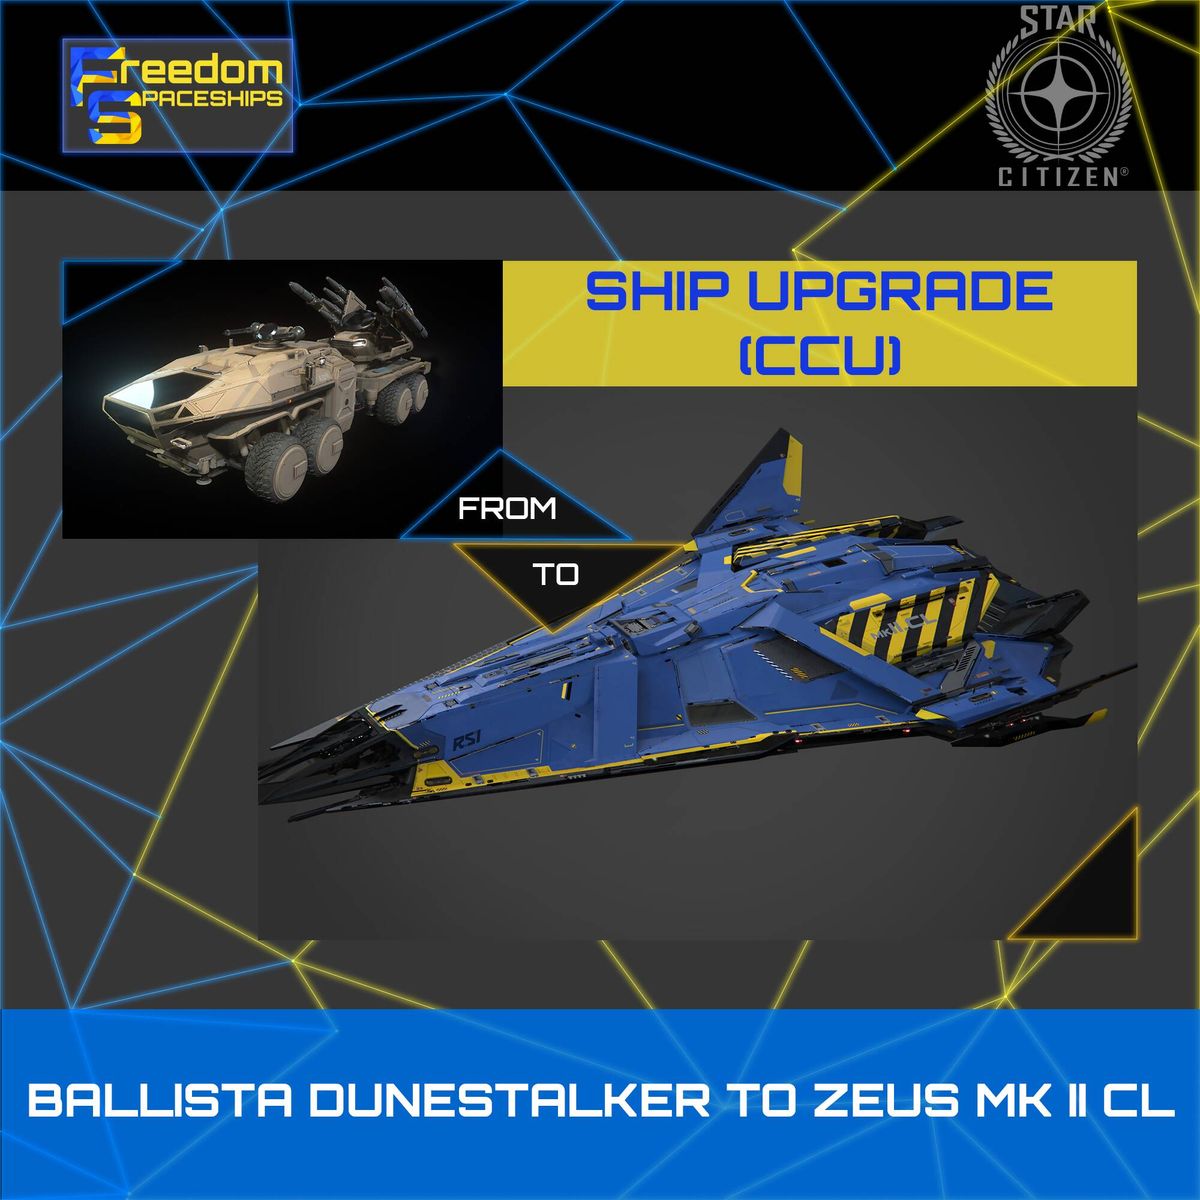 Upgrade - Ballista Dunestalker to Zeus MK II CL